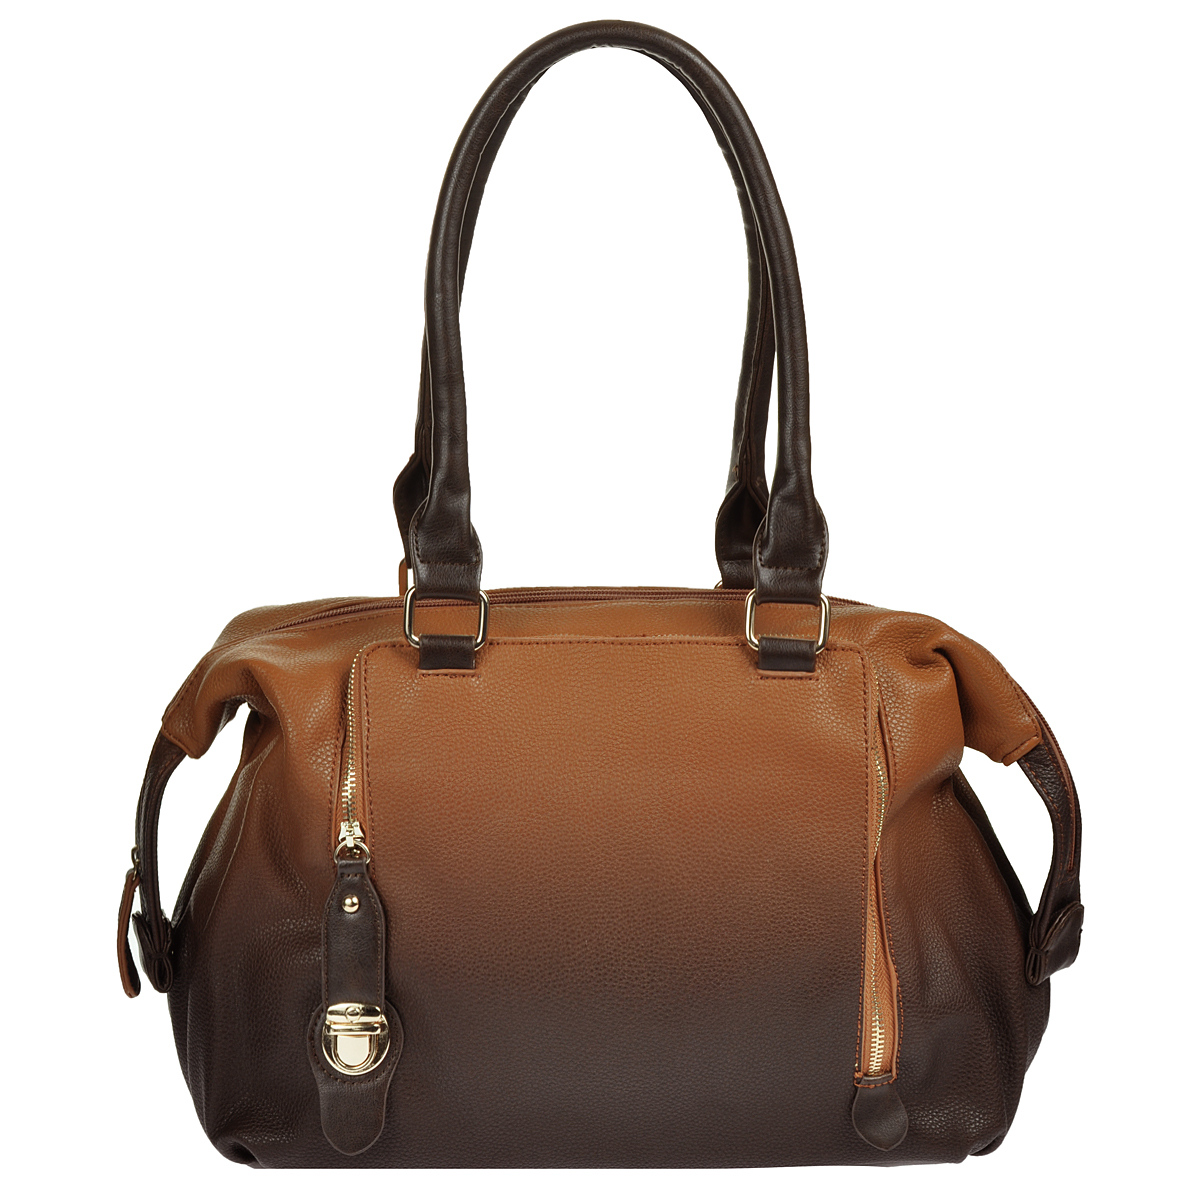 Сумка женская "Orsa Oro", цвет: коричневый. D-749 - купить фирменную сумку по доступной цене с доставкой на дом в интернет магазине OZON.ru